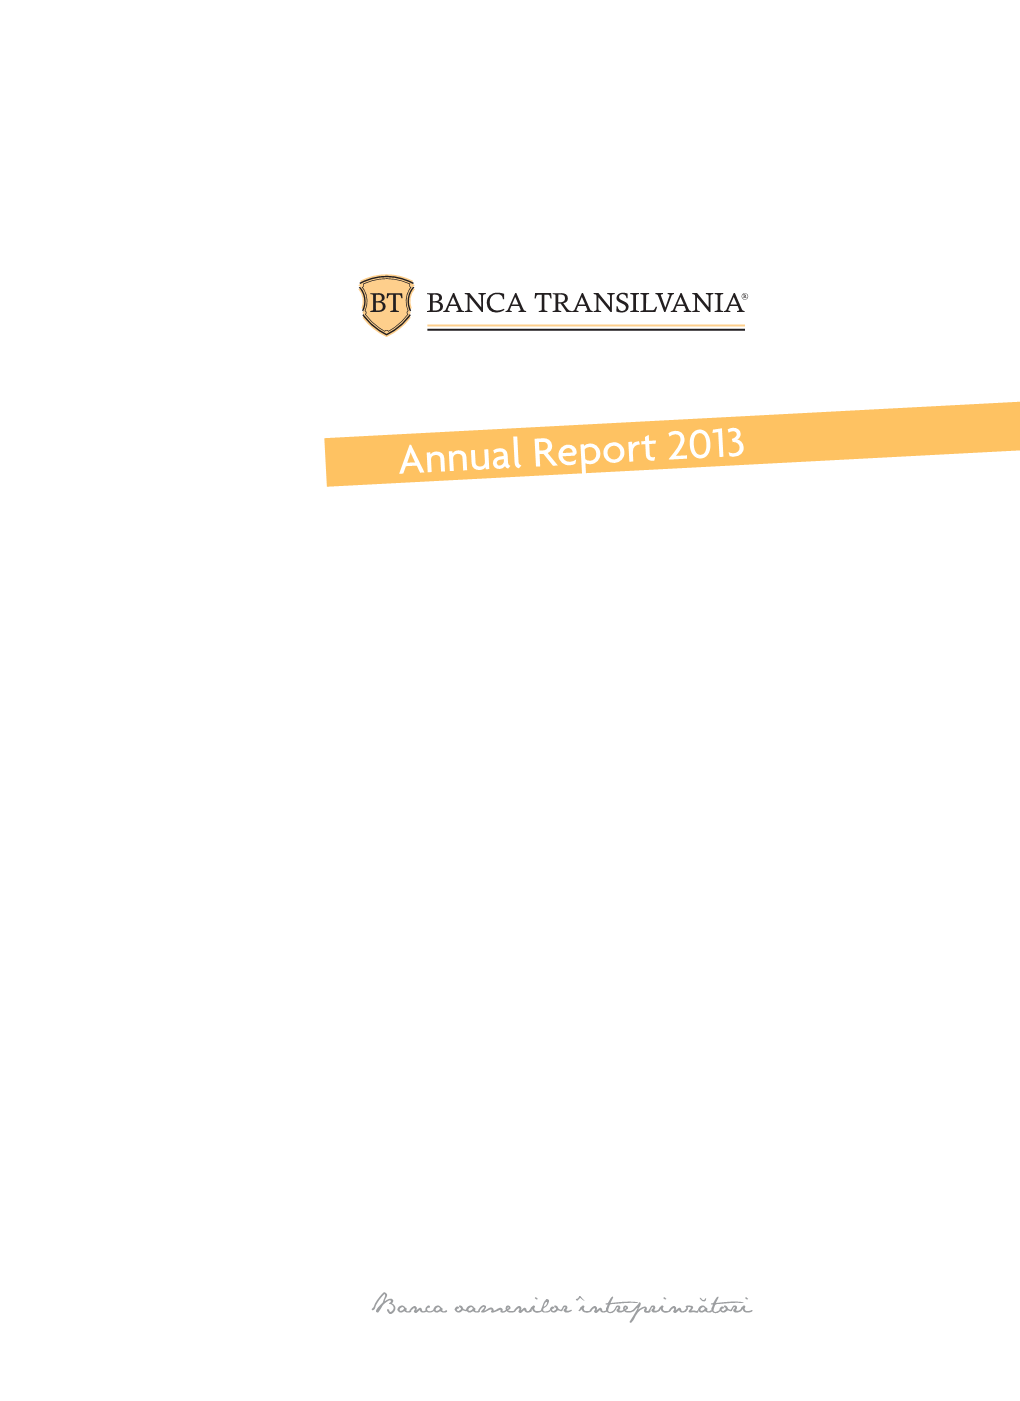 BANCA TRANSILVANIA SA Consolidated Financial Statements